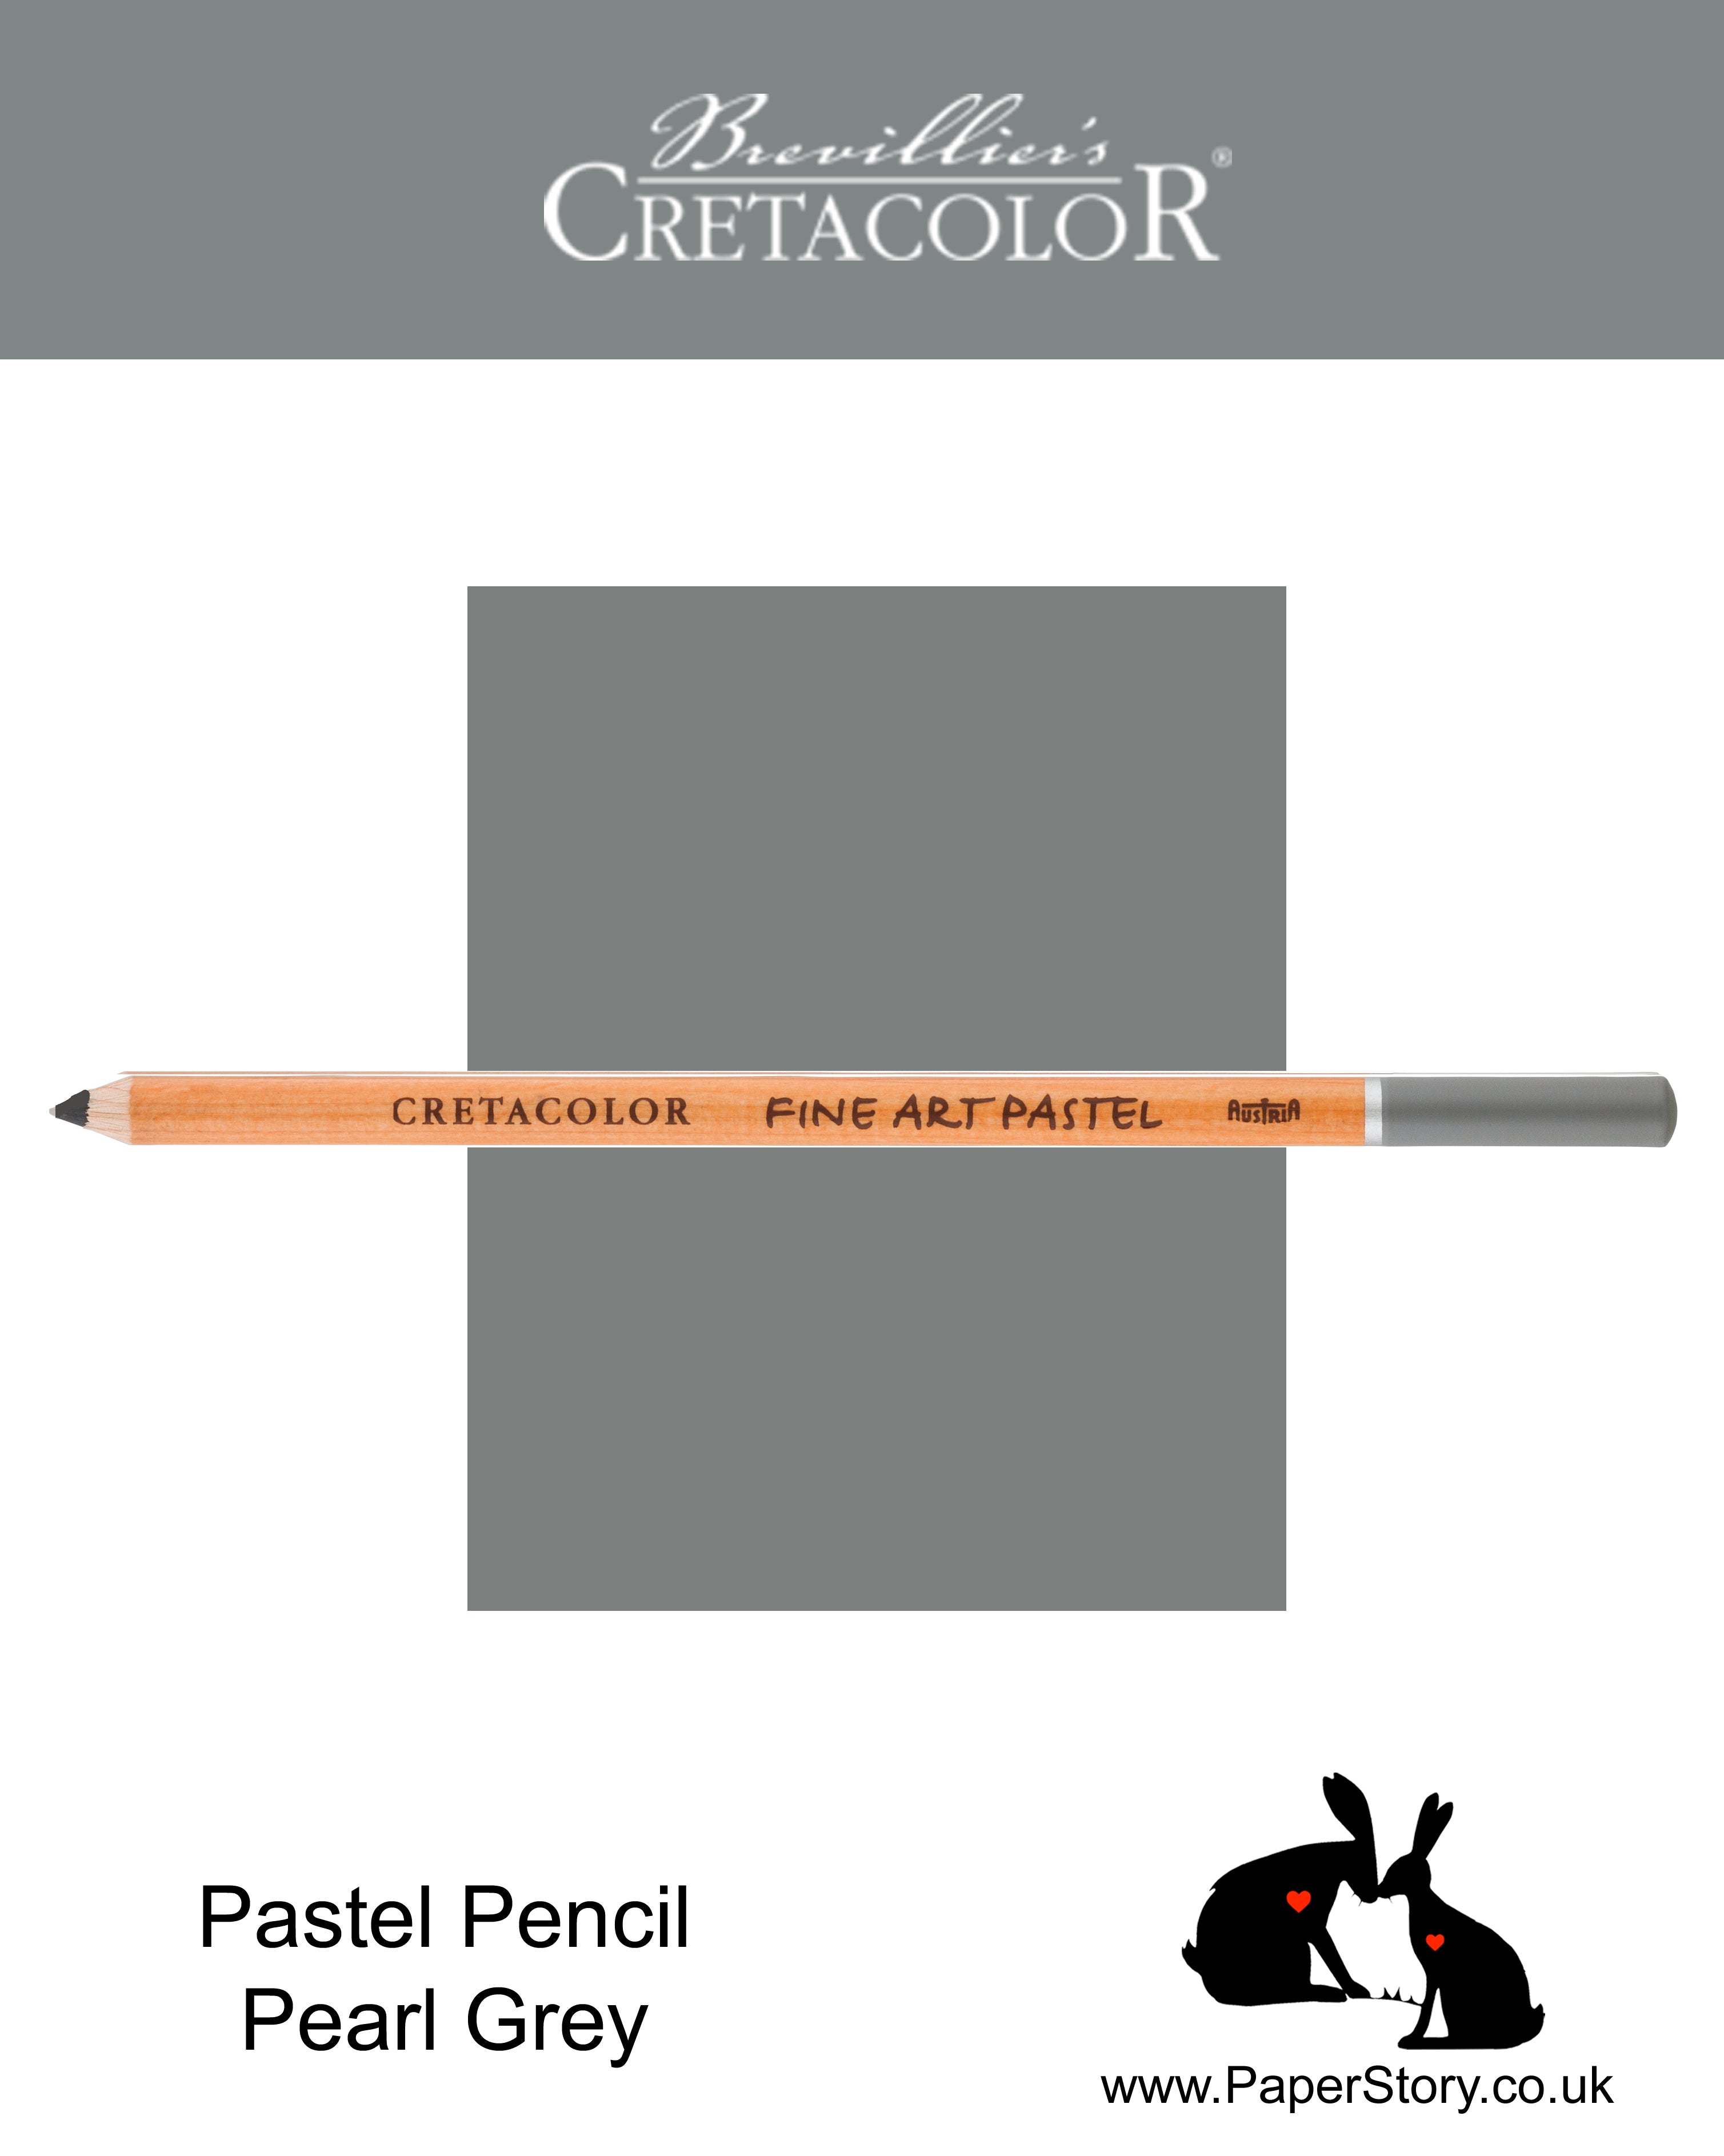 Cretacolor 472 34 Artists Pastel Pencil Pearl Grey